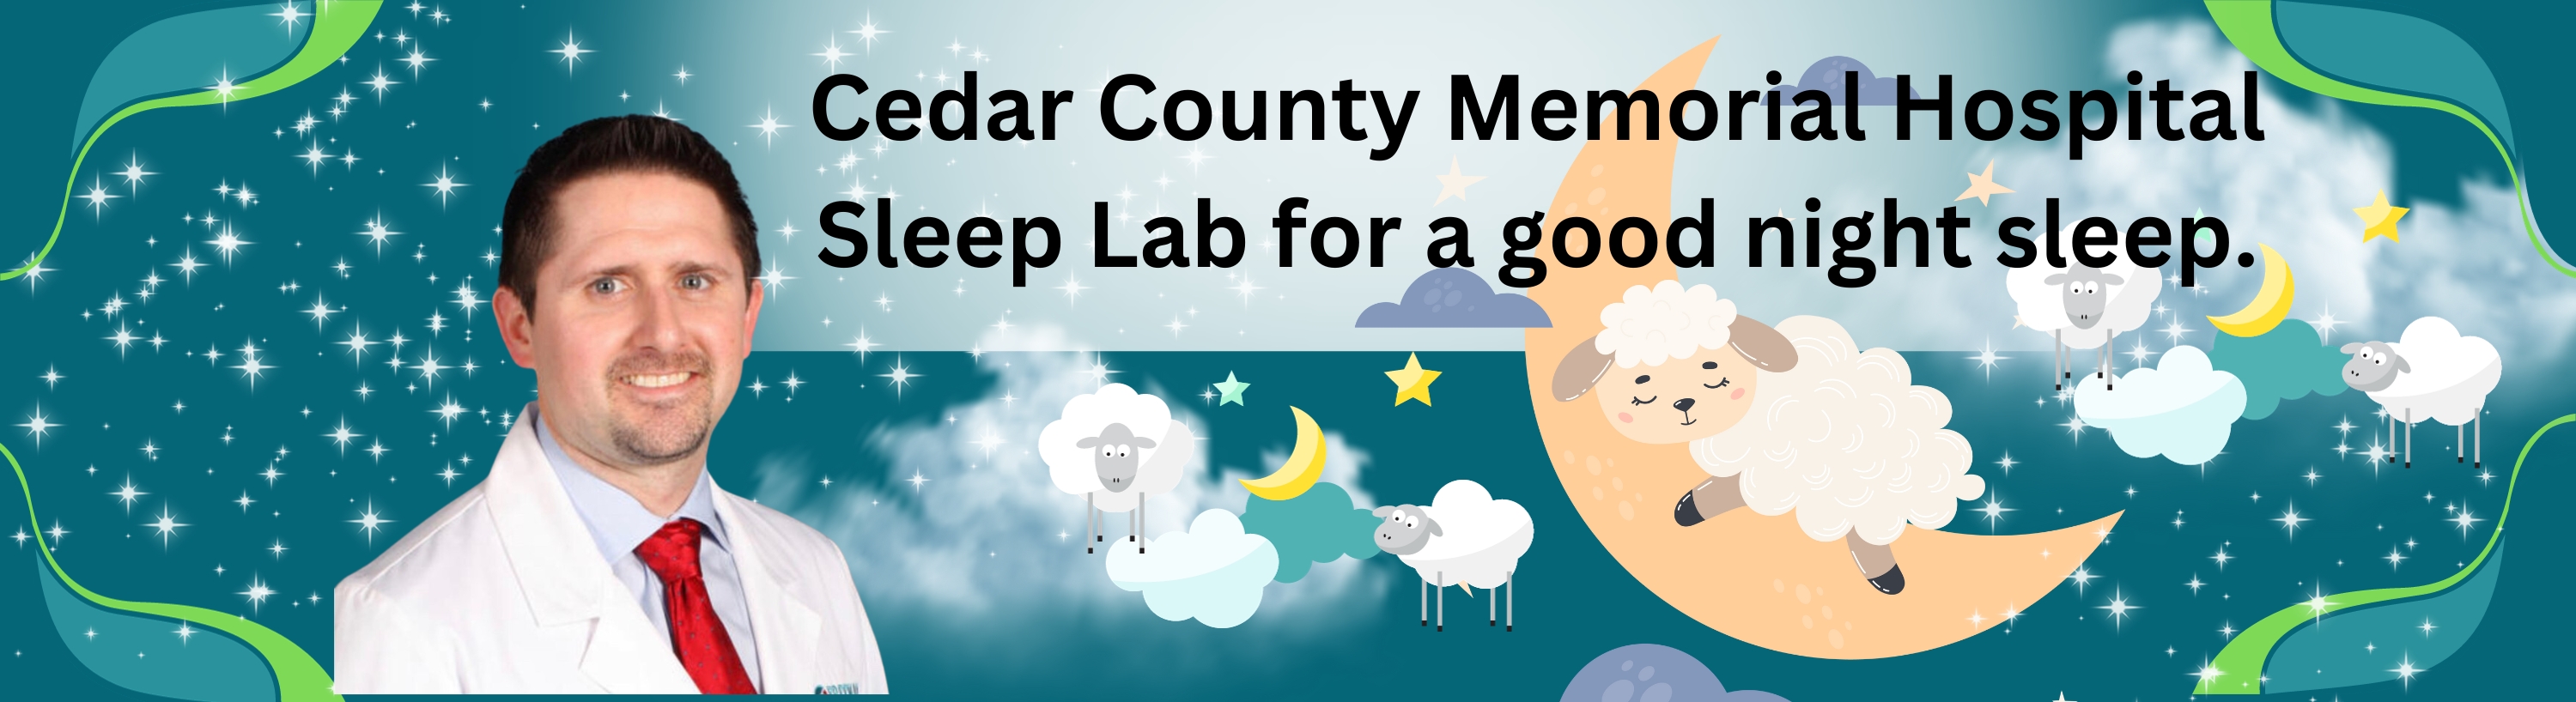 Cedar County Memorial Hospital Sleep Lab for a good night sleep.